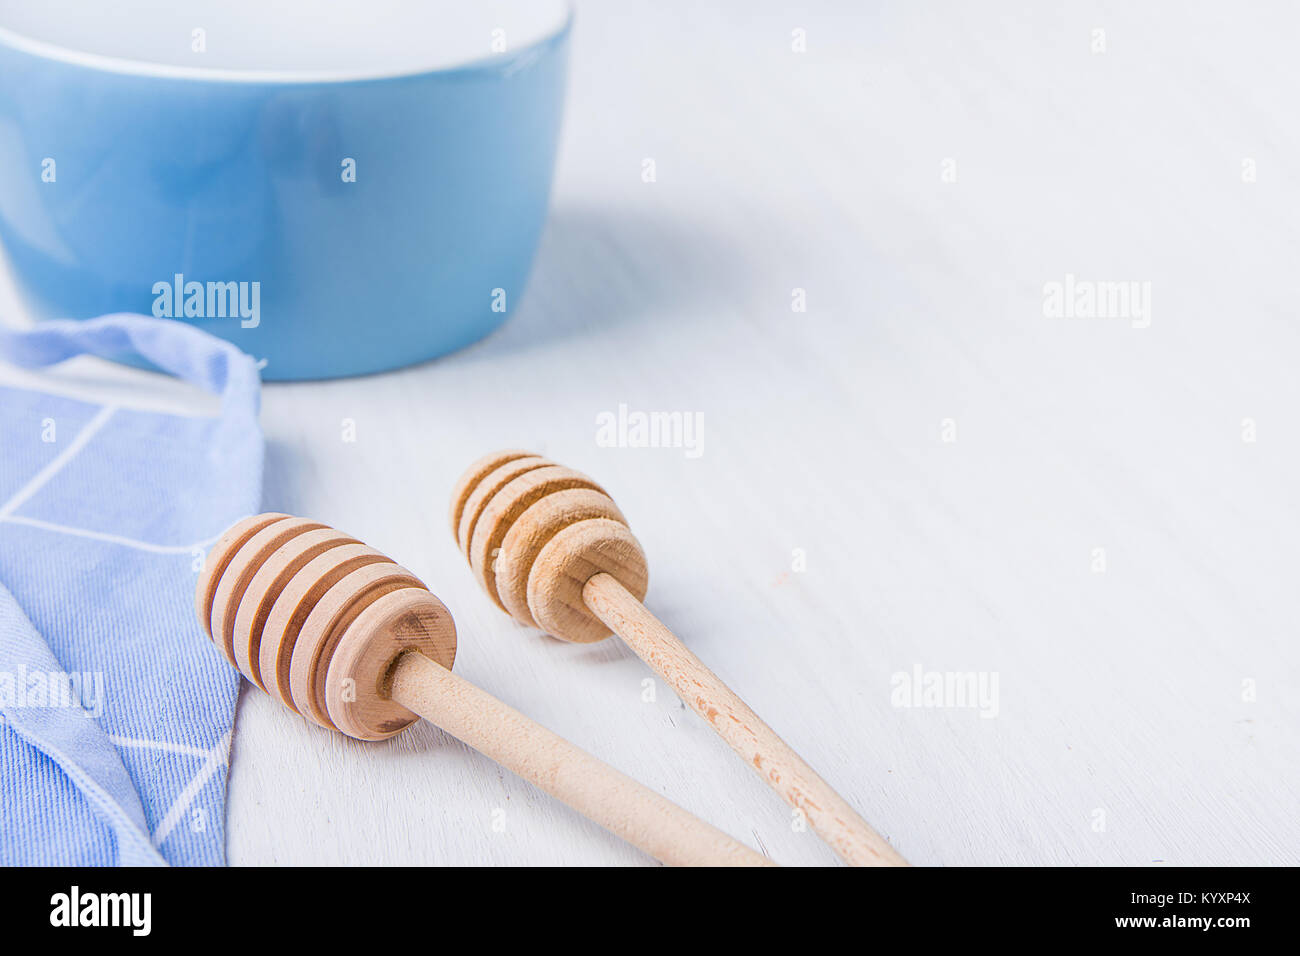 Blue Recipiente vuoto di miele di legno campionatori a immersione cucchiai grembiule cotone bianco sul tavolo. Holiday cottura concetto di cucina a vista. Natale Pasqua. Cucina interna. Mi sociale Foto Stock